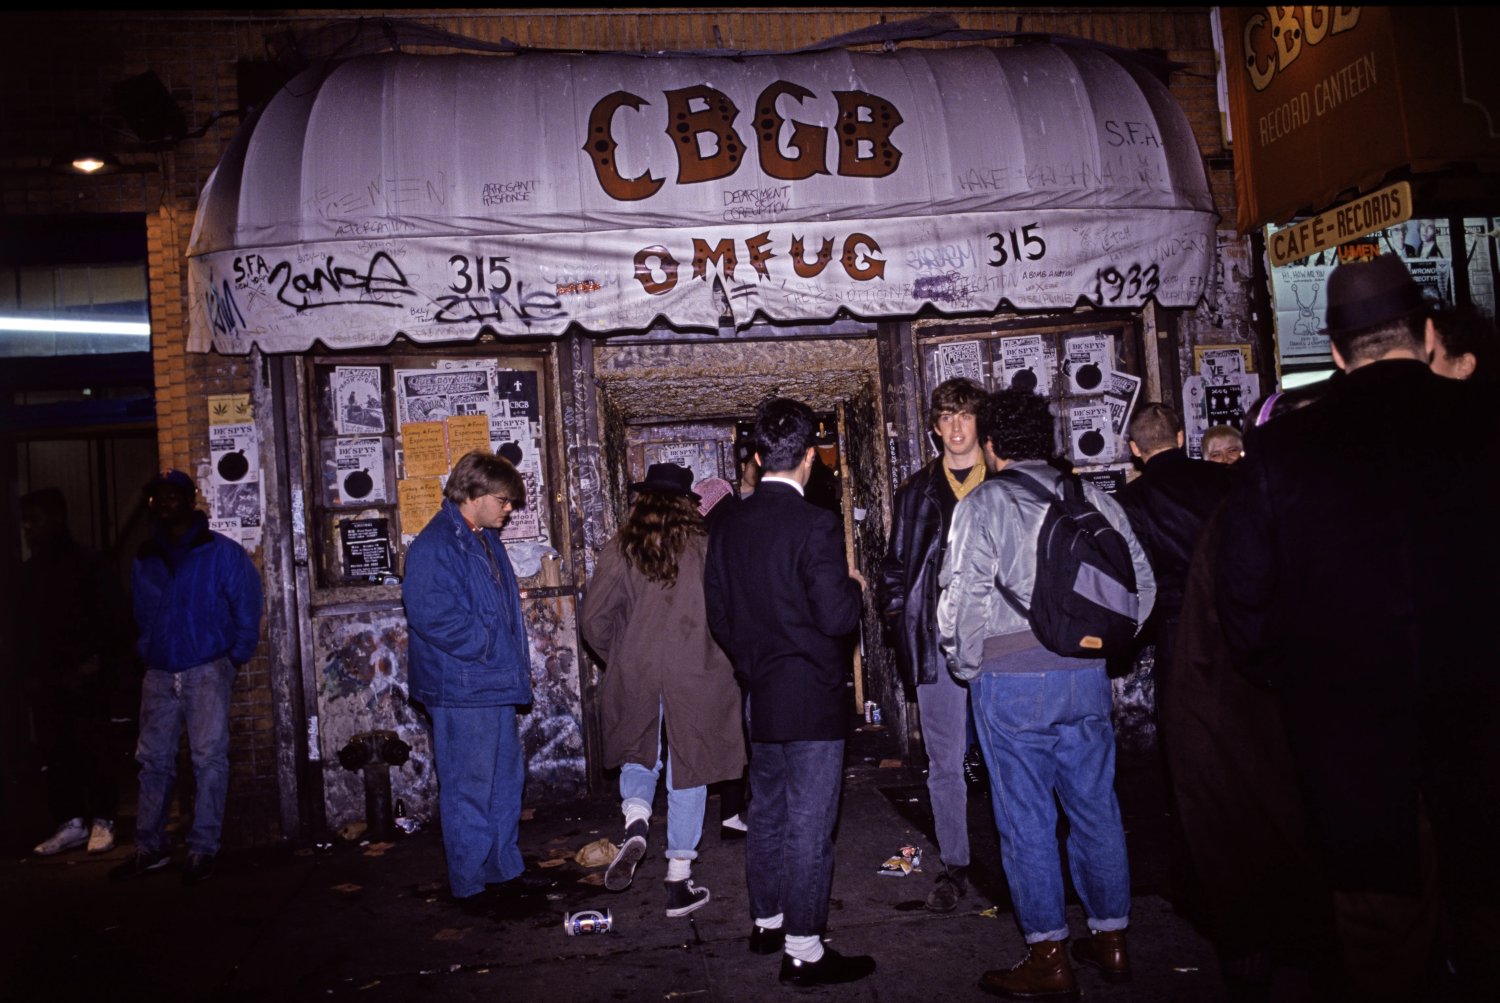 Veduta esterna del CBGB, locale newyorkese che ha ospitato i concerti di numerosissime band punk e new wave, nel 1988 (Credits foto: Getty Images, Rita Barros).